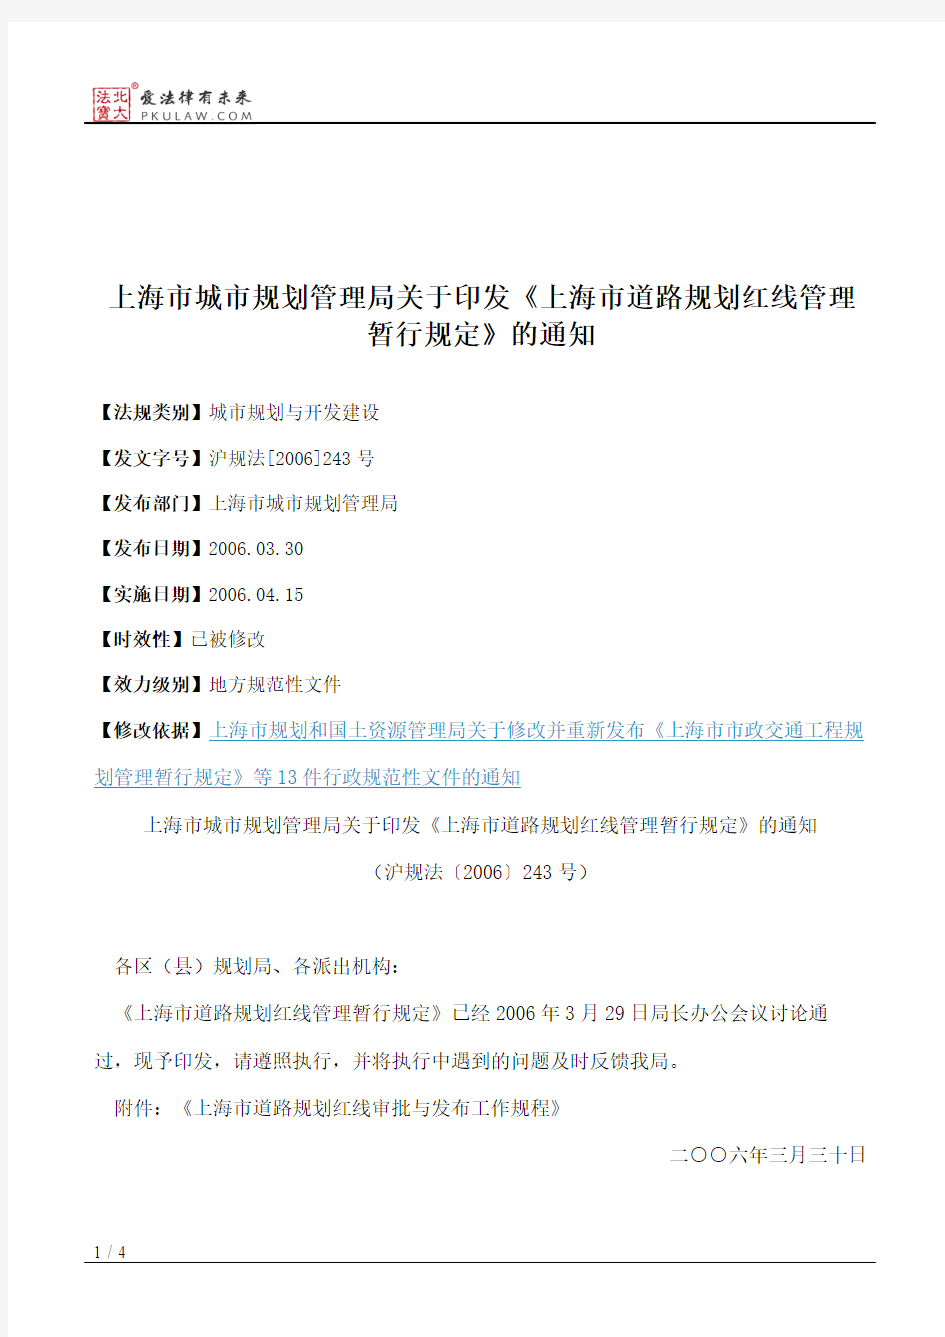 上海市城市规划管理局关于印发《上海市道路规划红线管理暂行规定